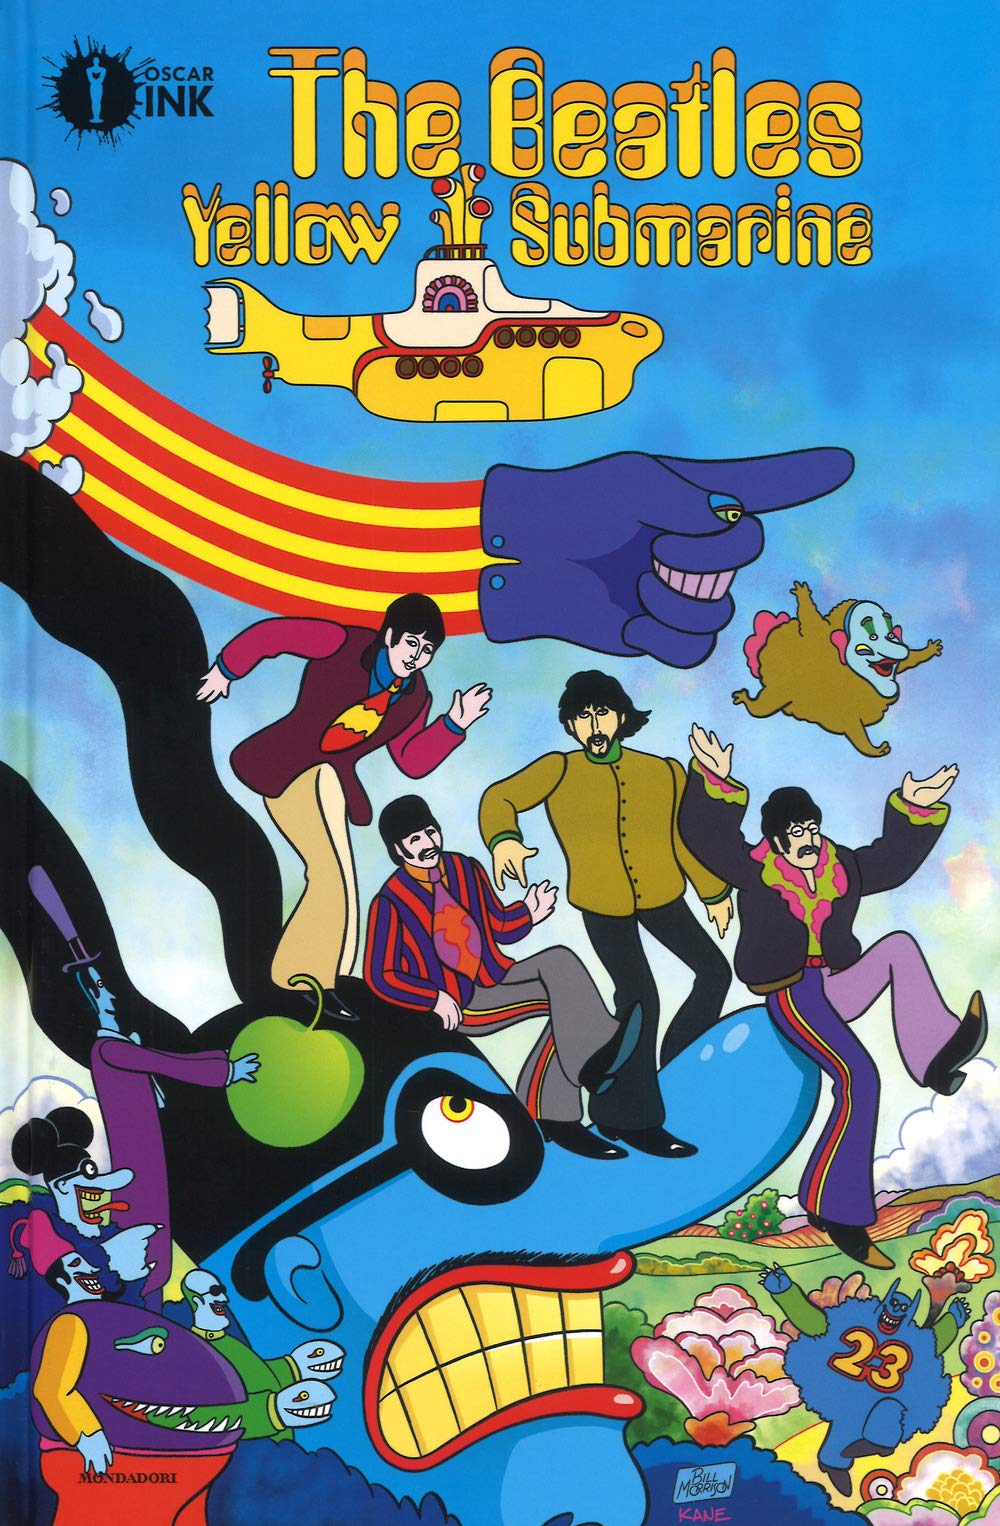 Libri Bill Morrison - The Beatles. Yellow Submarine NUOVO SIGILLATO, EDIZIONE DEL 09/10/2018 SUBITO DISPONIBILE